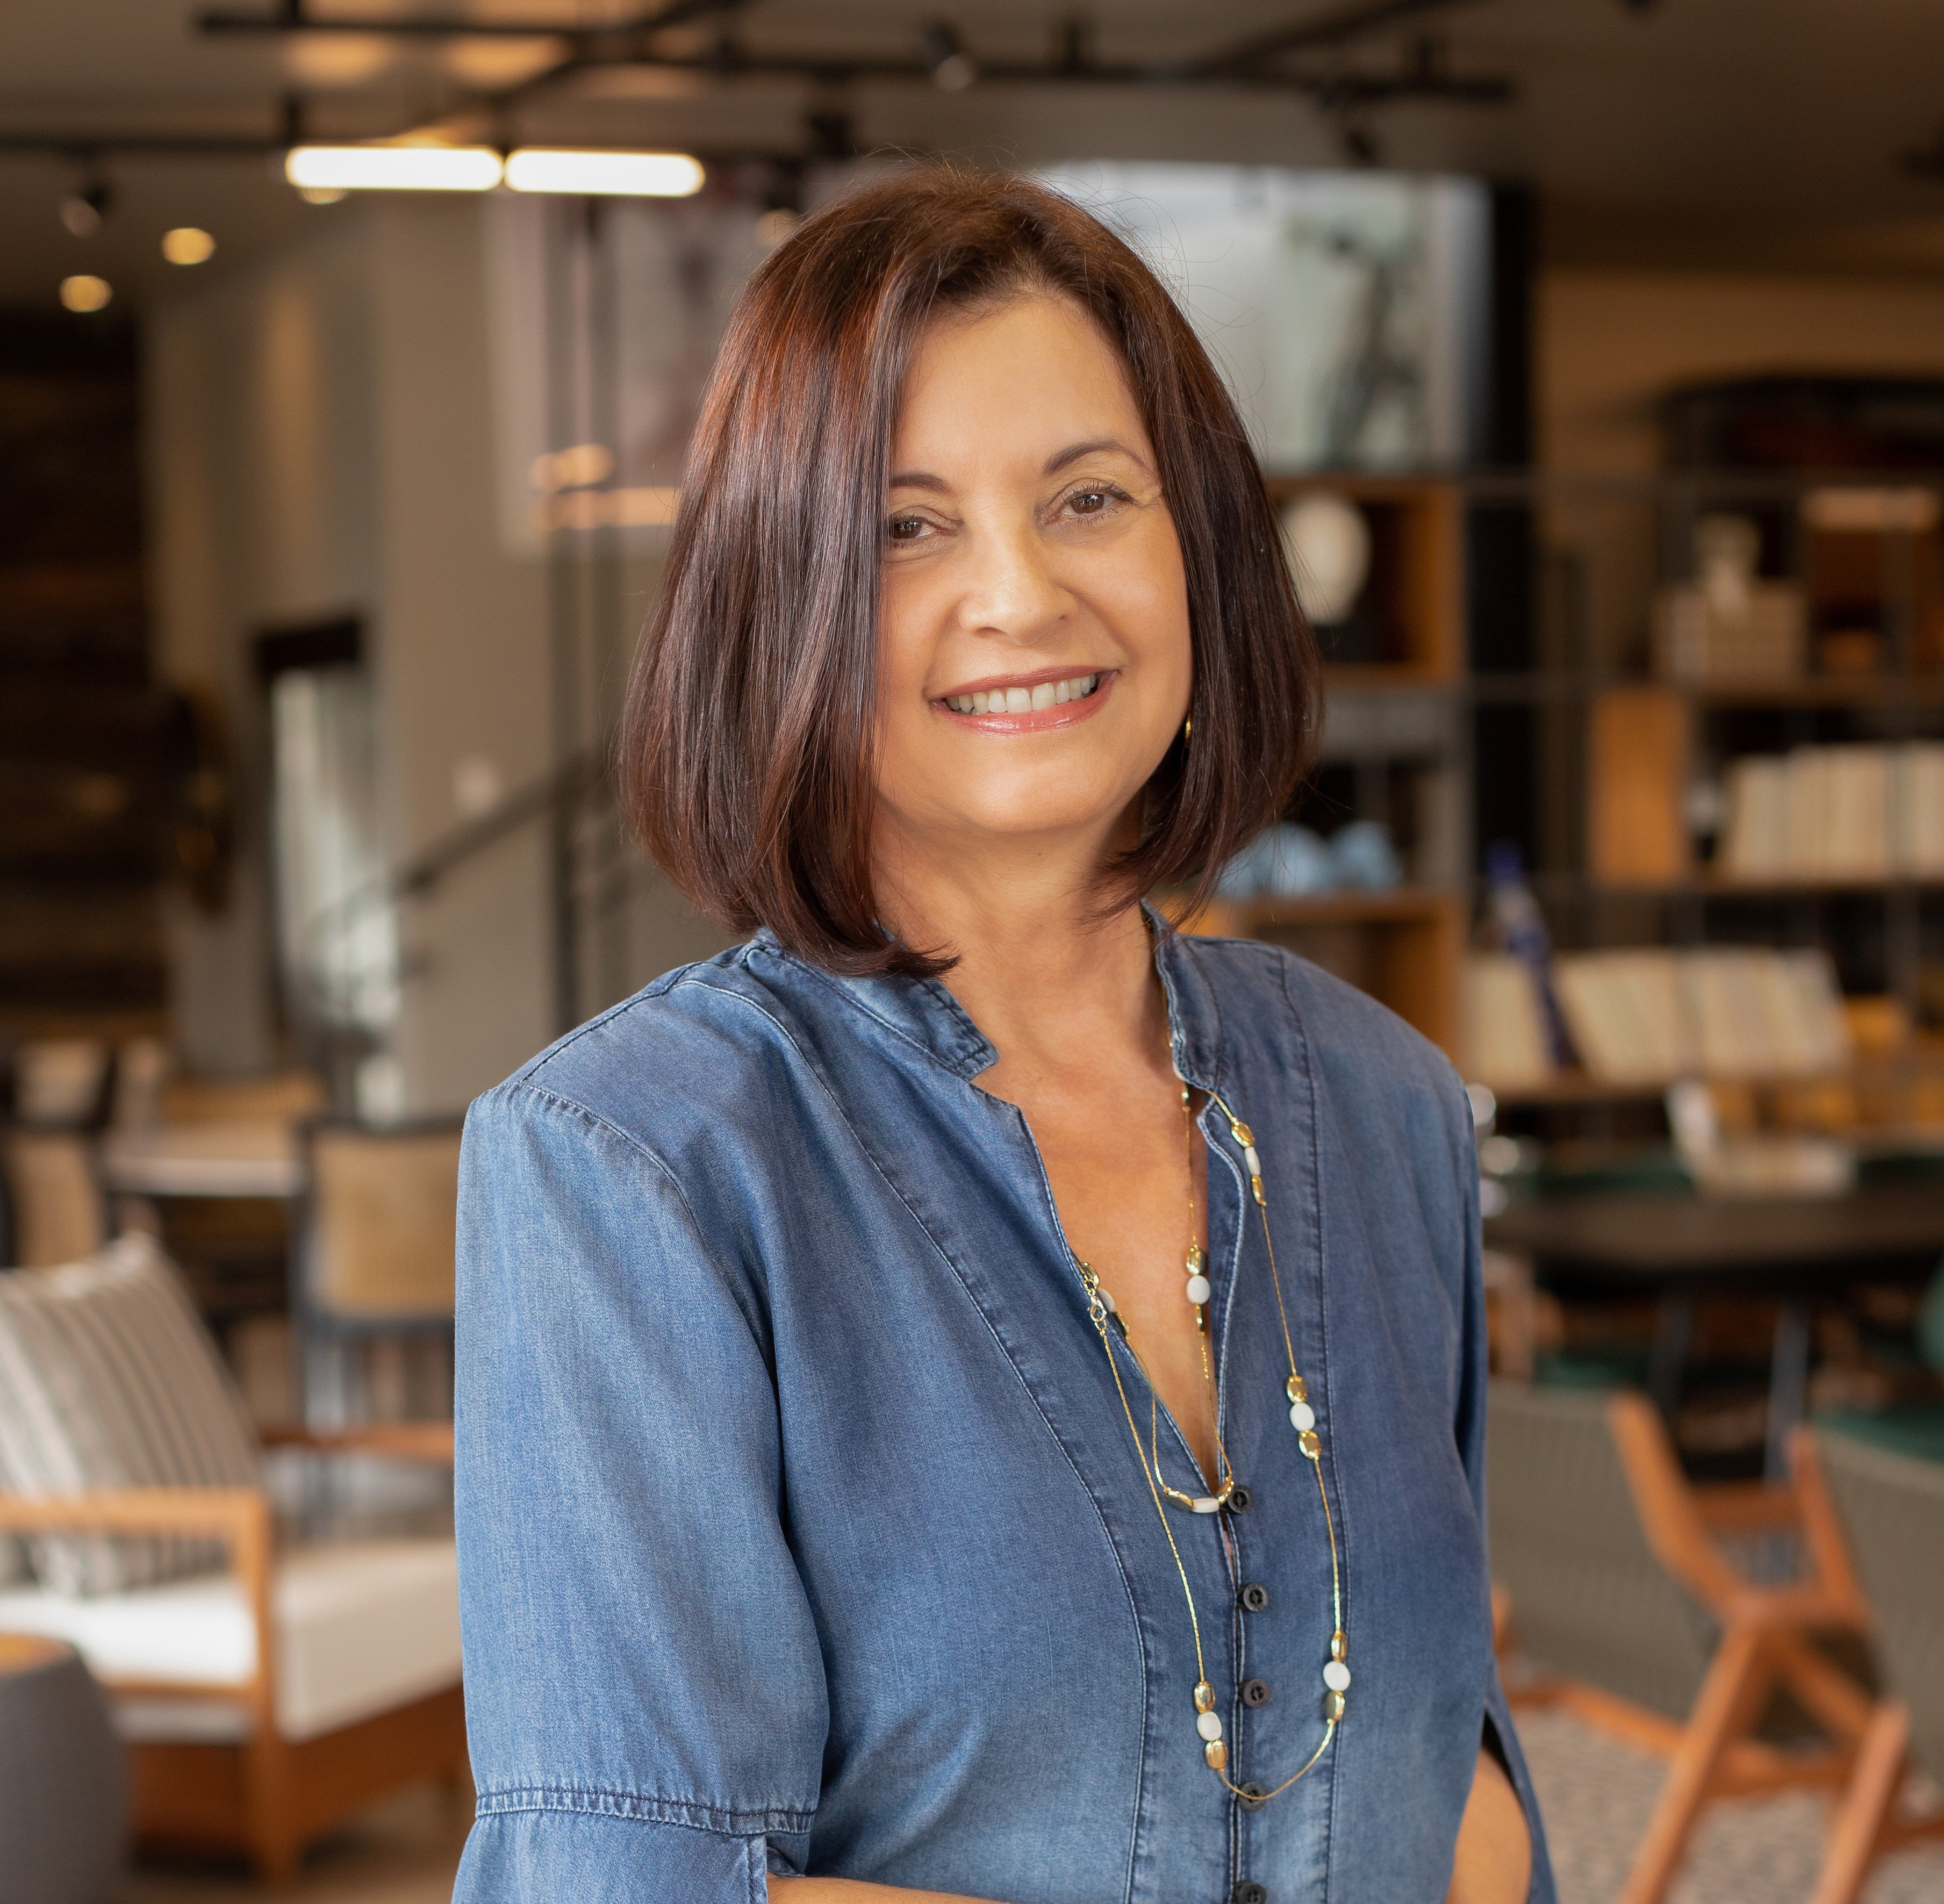 A empresária Tina Peixoto, à frente da Jomig – Uberaba, homenageada no especial Mulheres Empreendedoras da 24ª edição da revista Mulheres, compartilhando sua bem sucedida jornada no ramo do comercio atacadista.  